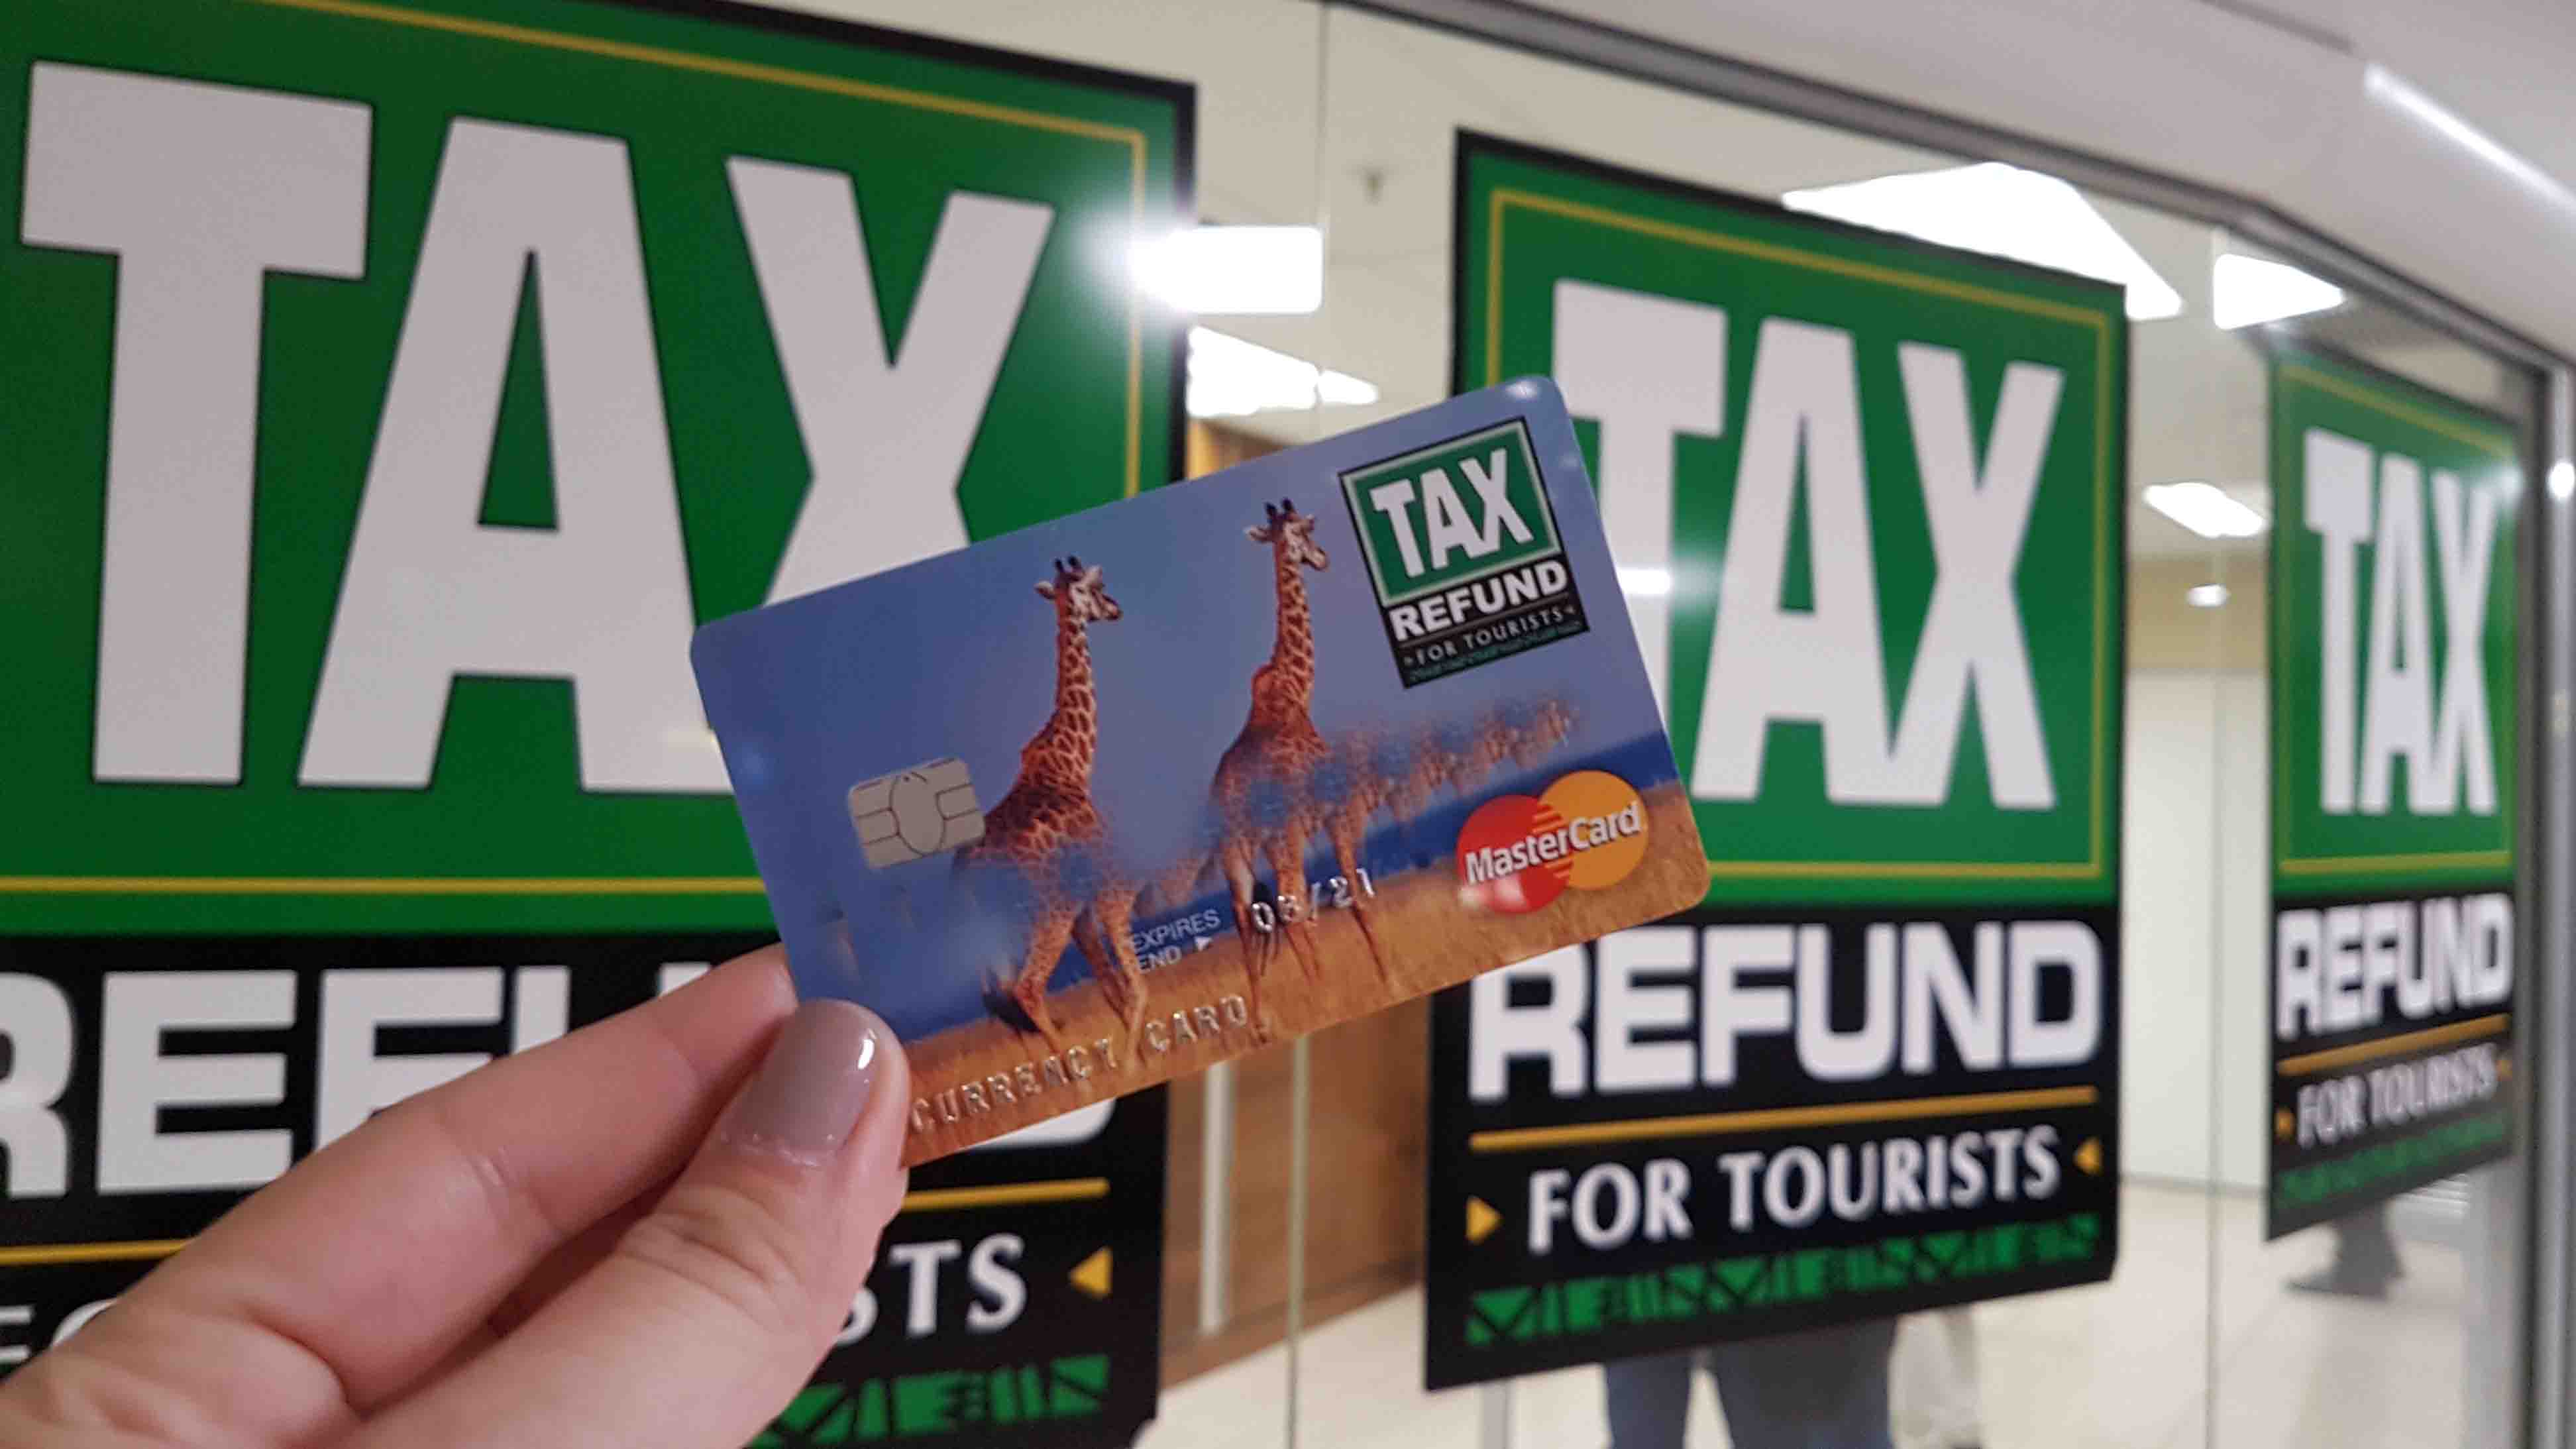 Cartão de tax refund da África do Sul - fofo, né?!